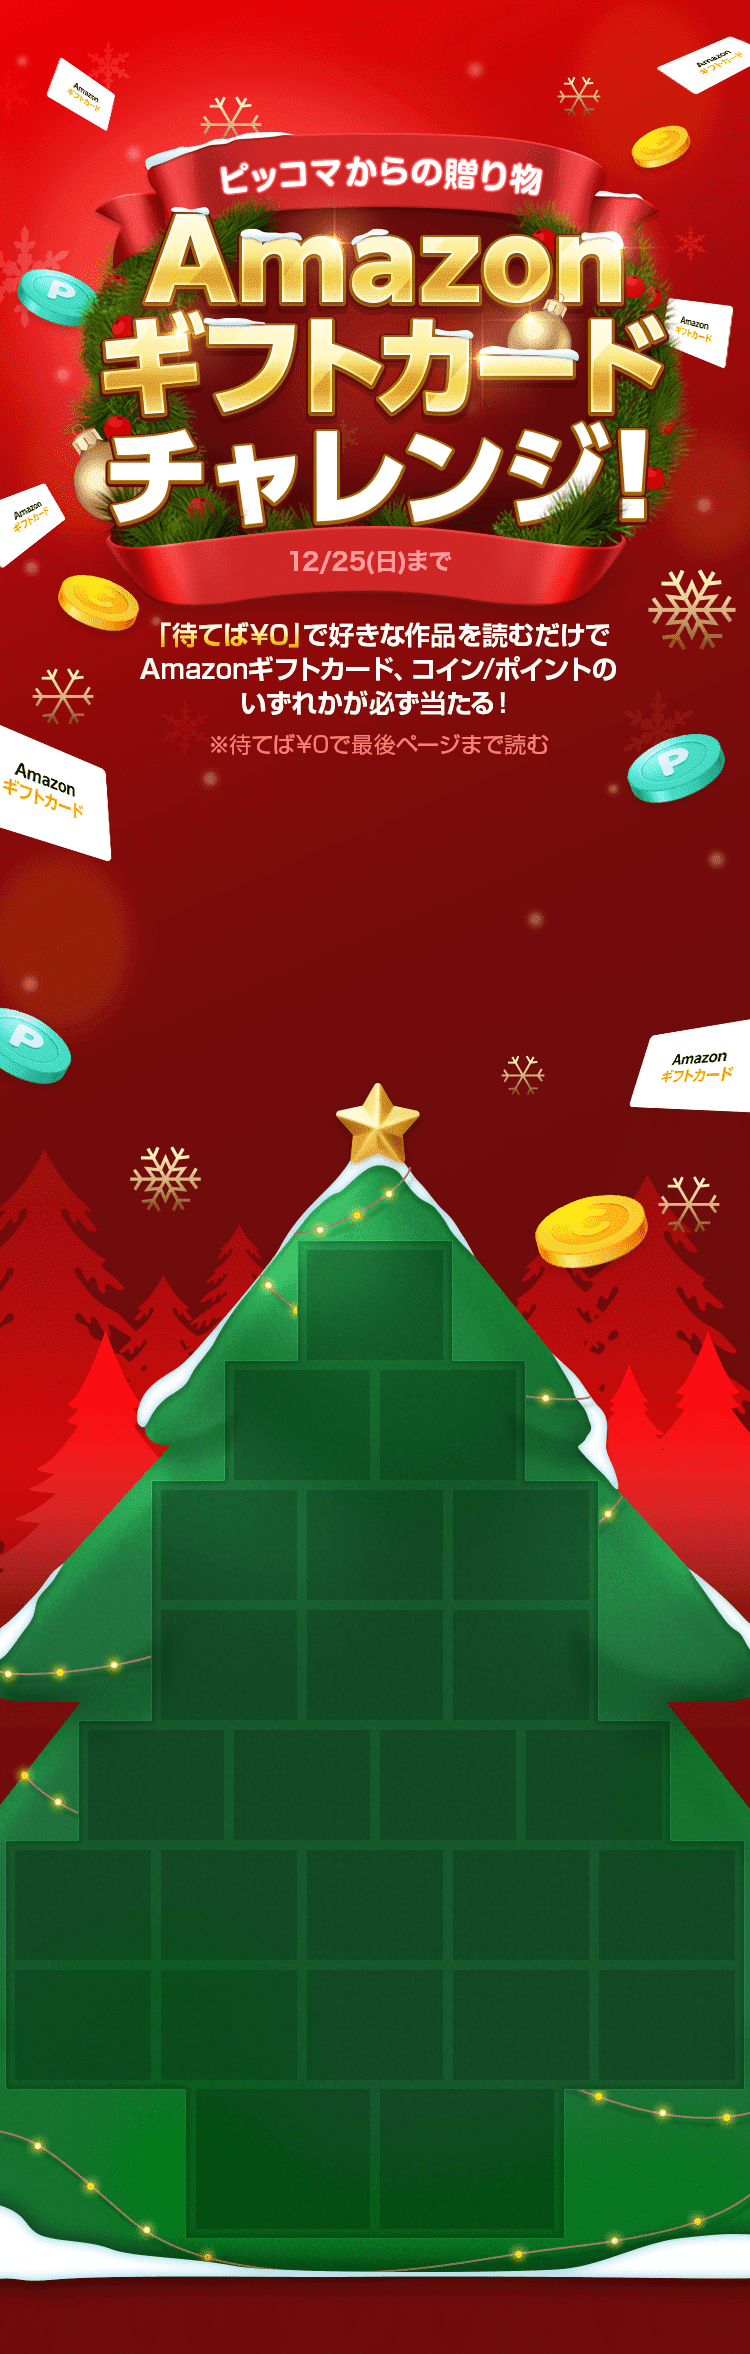 クリスマスまで毎日抽選!「ピッコマ」Amazonギフトカードチャレンジ